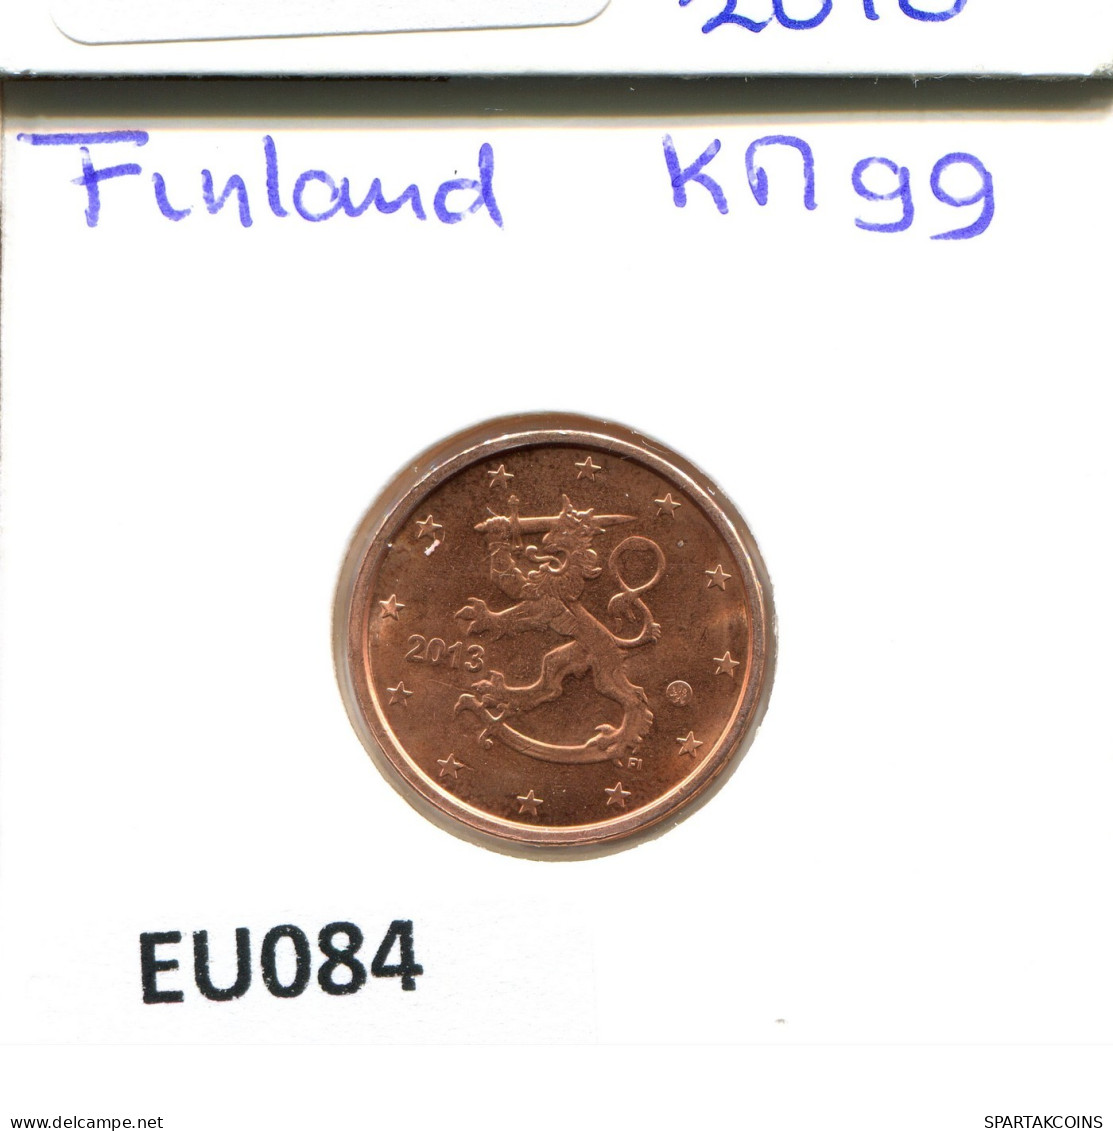 2 EURO CENTS 2013 FINLAND Coin #EU084.U.A - Finland